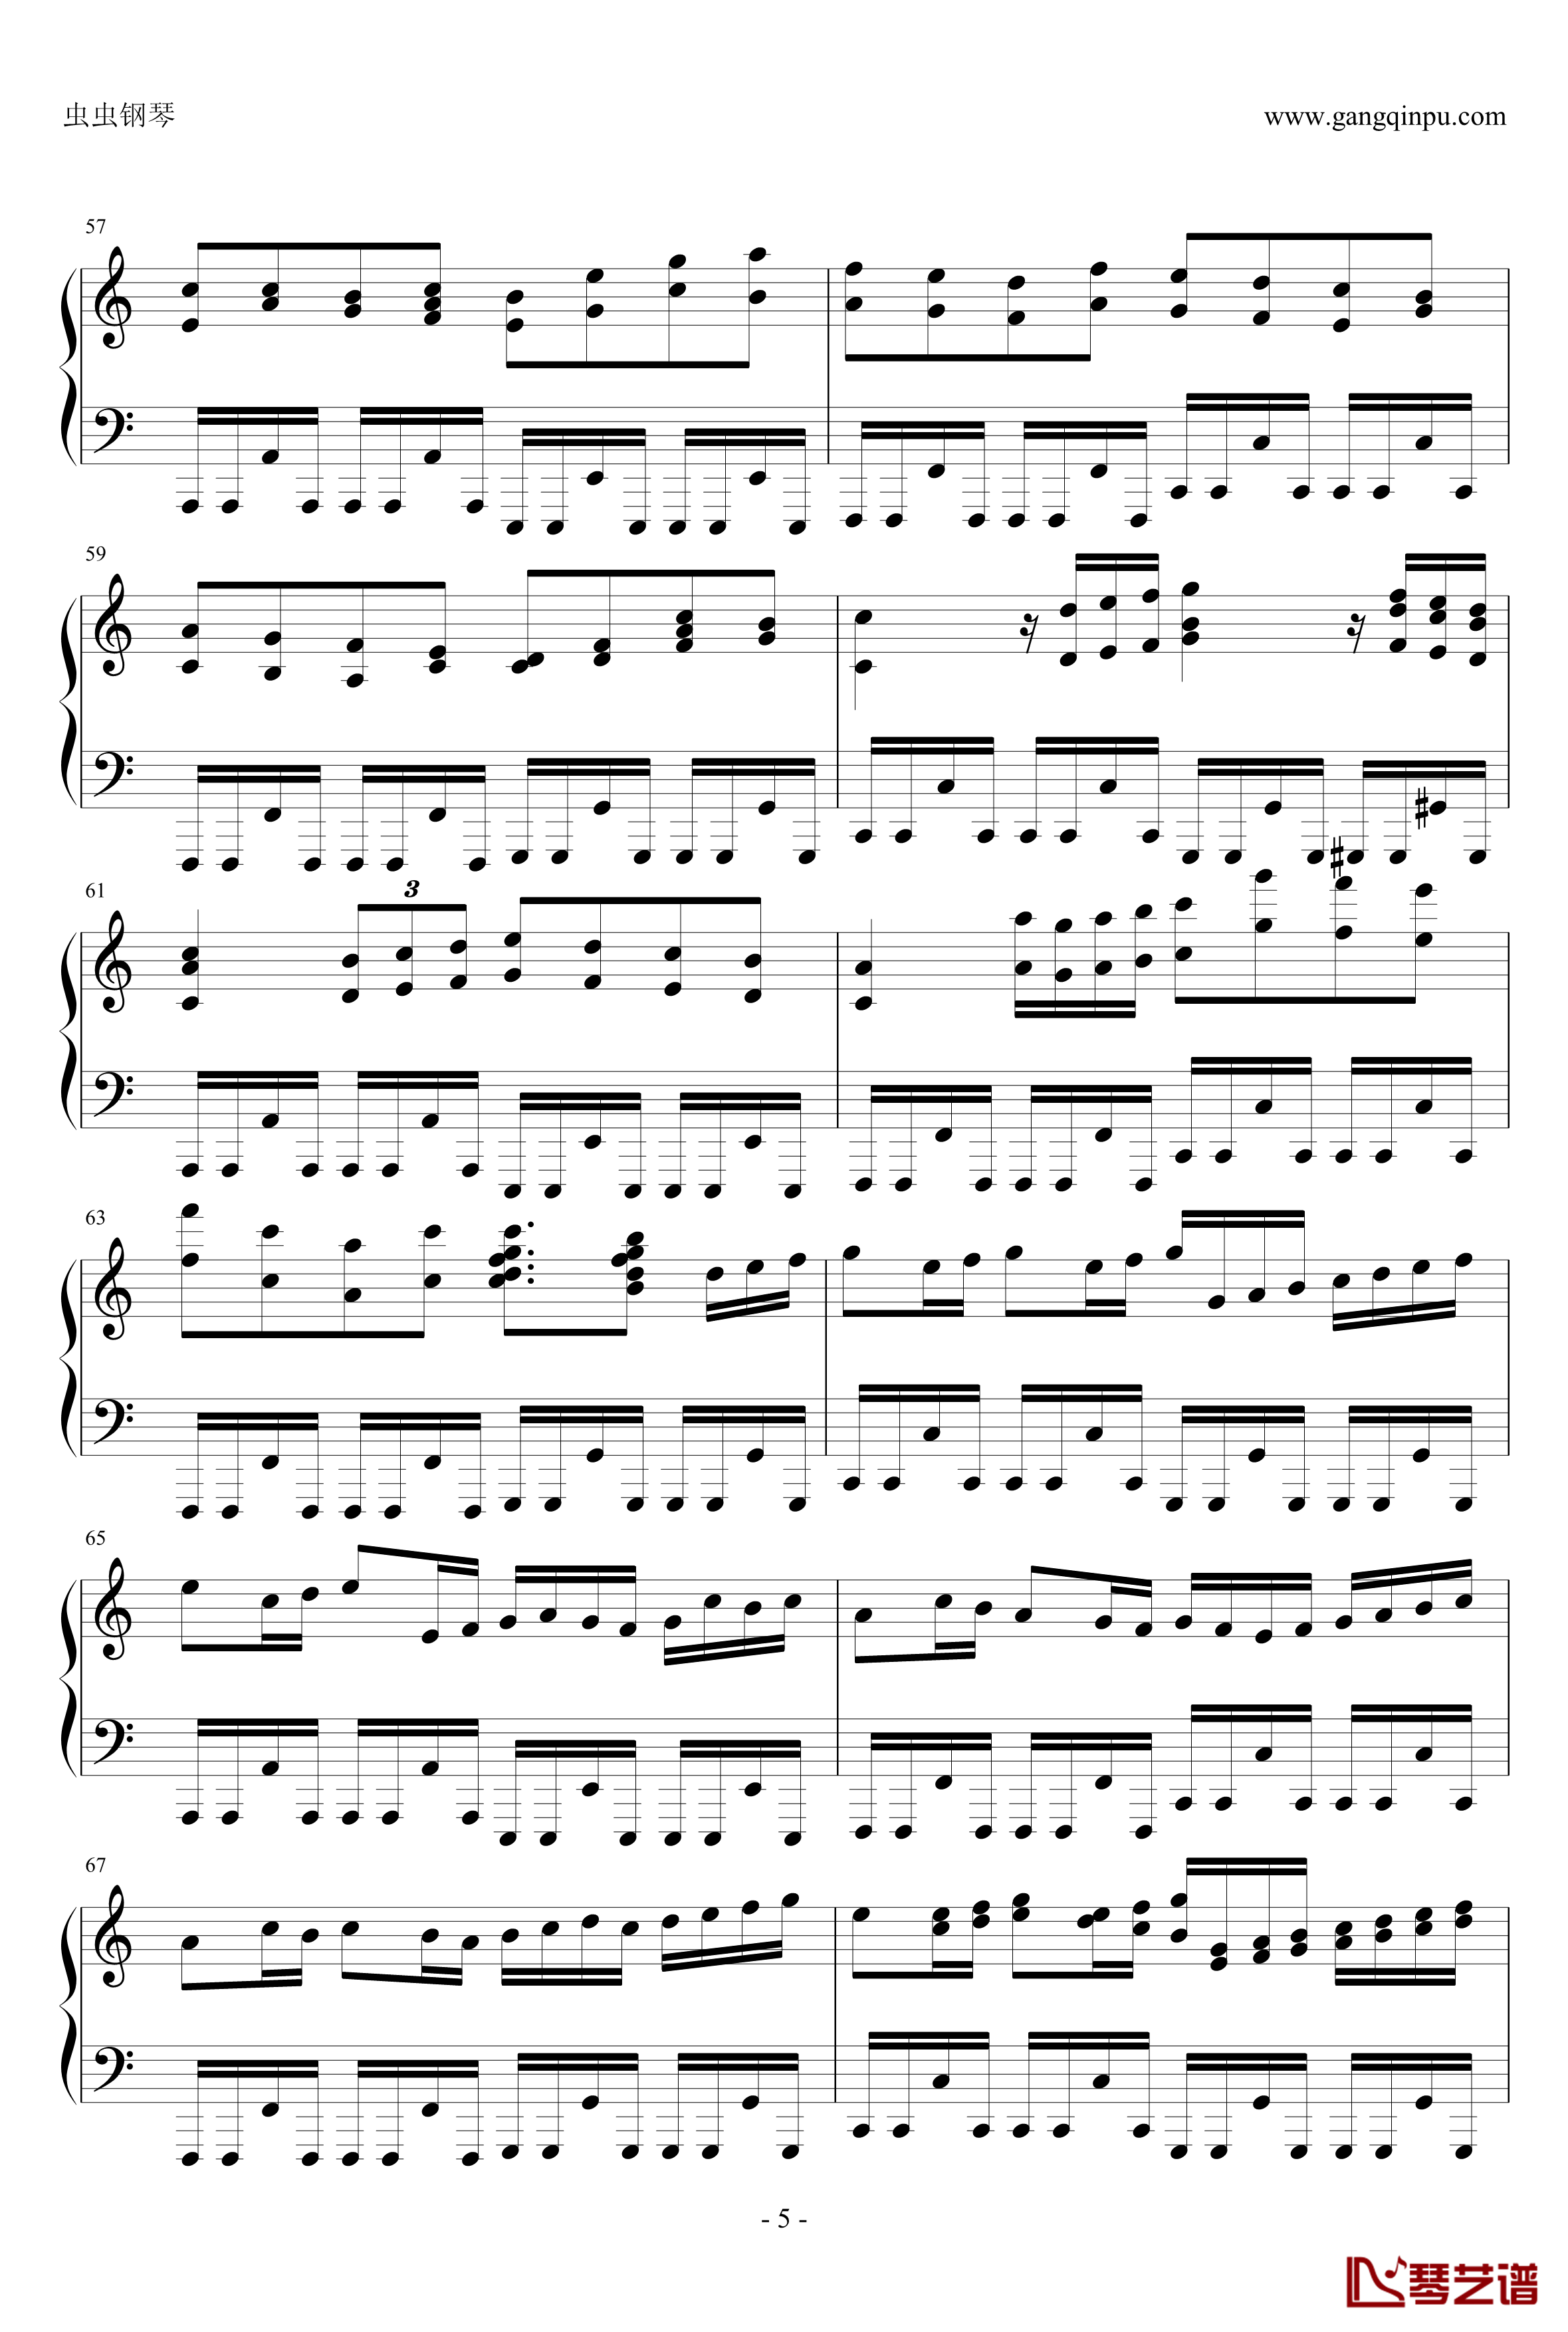 卡农疯狂摇滚版钢琴谱-约翰·巴哈贝尔5